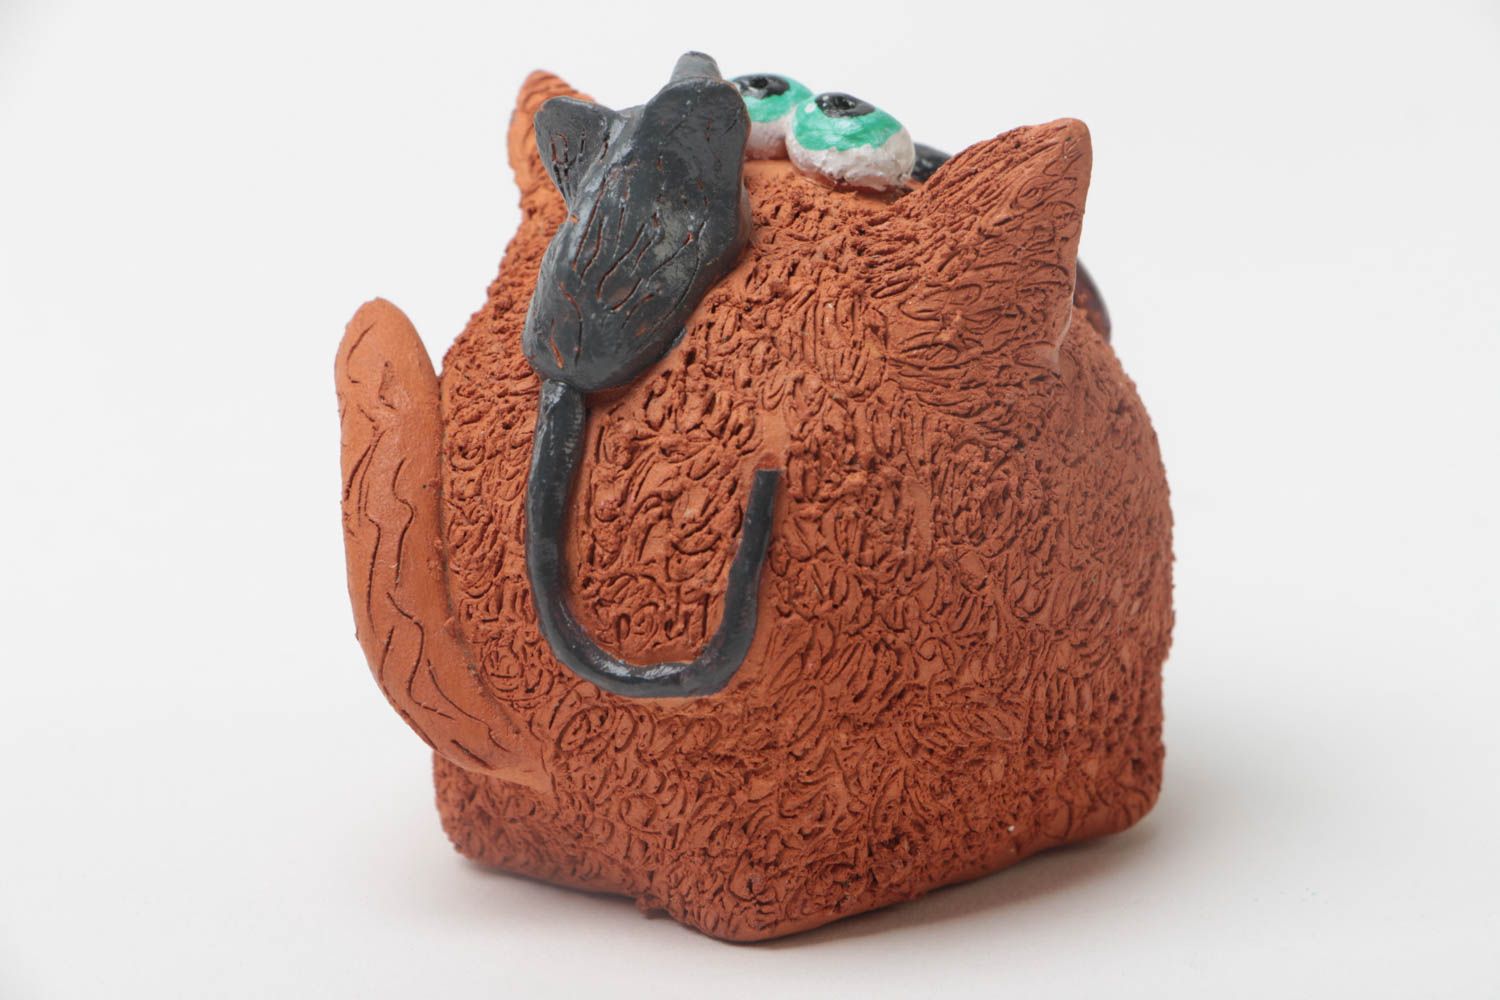 Керамическая фигурка кота ручной работы из глины расписанная красками забавная фото 4